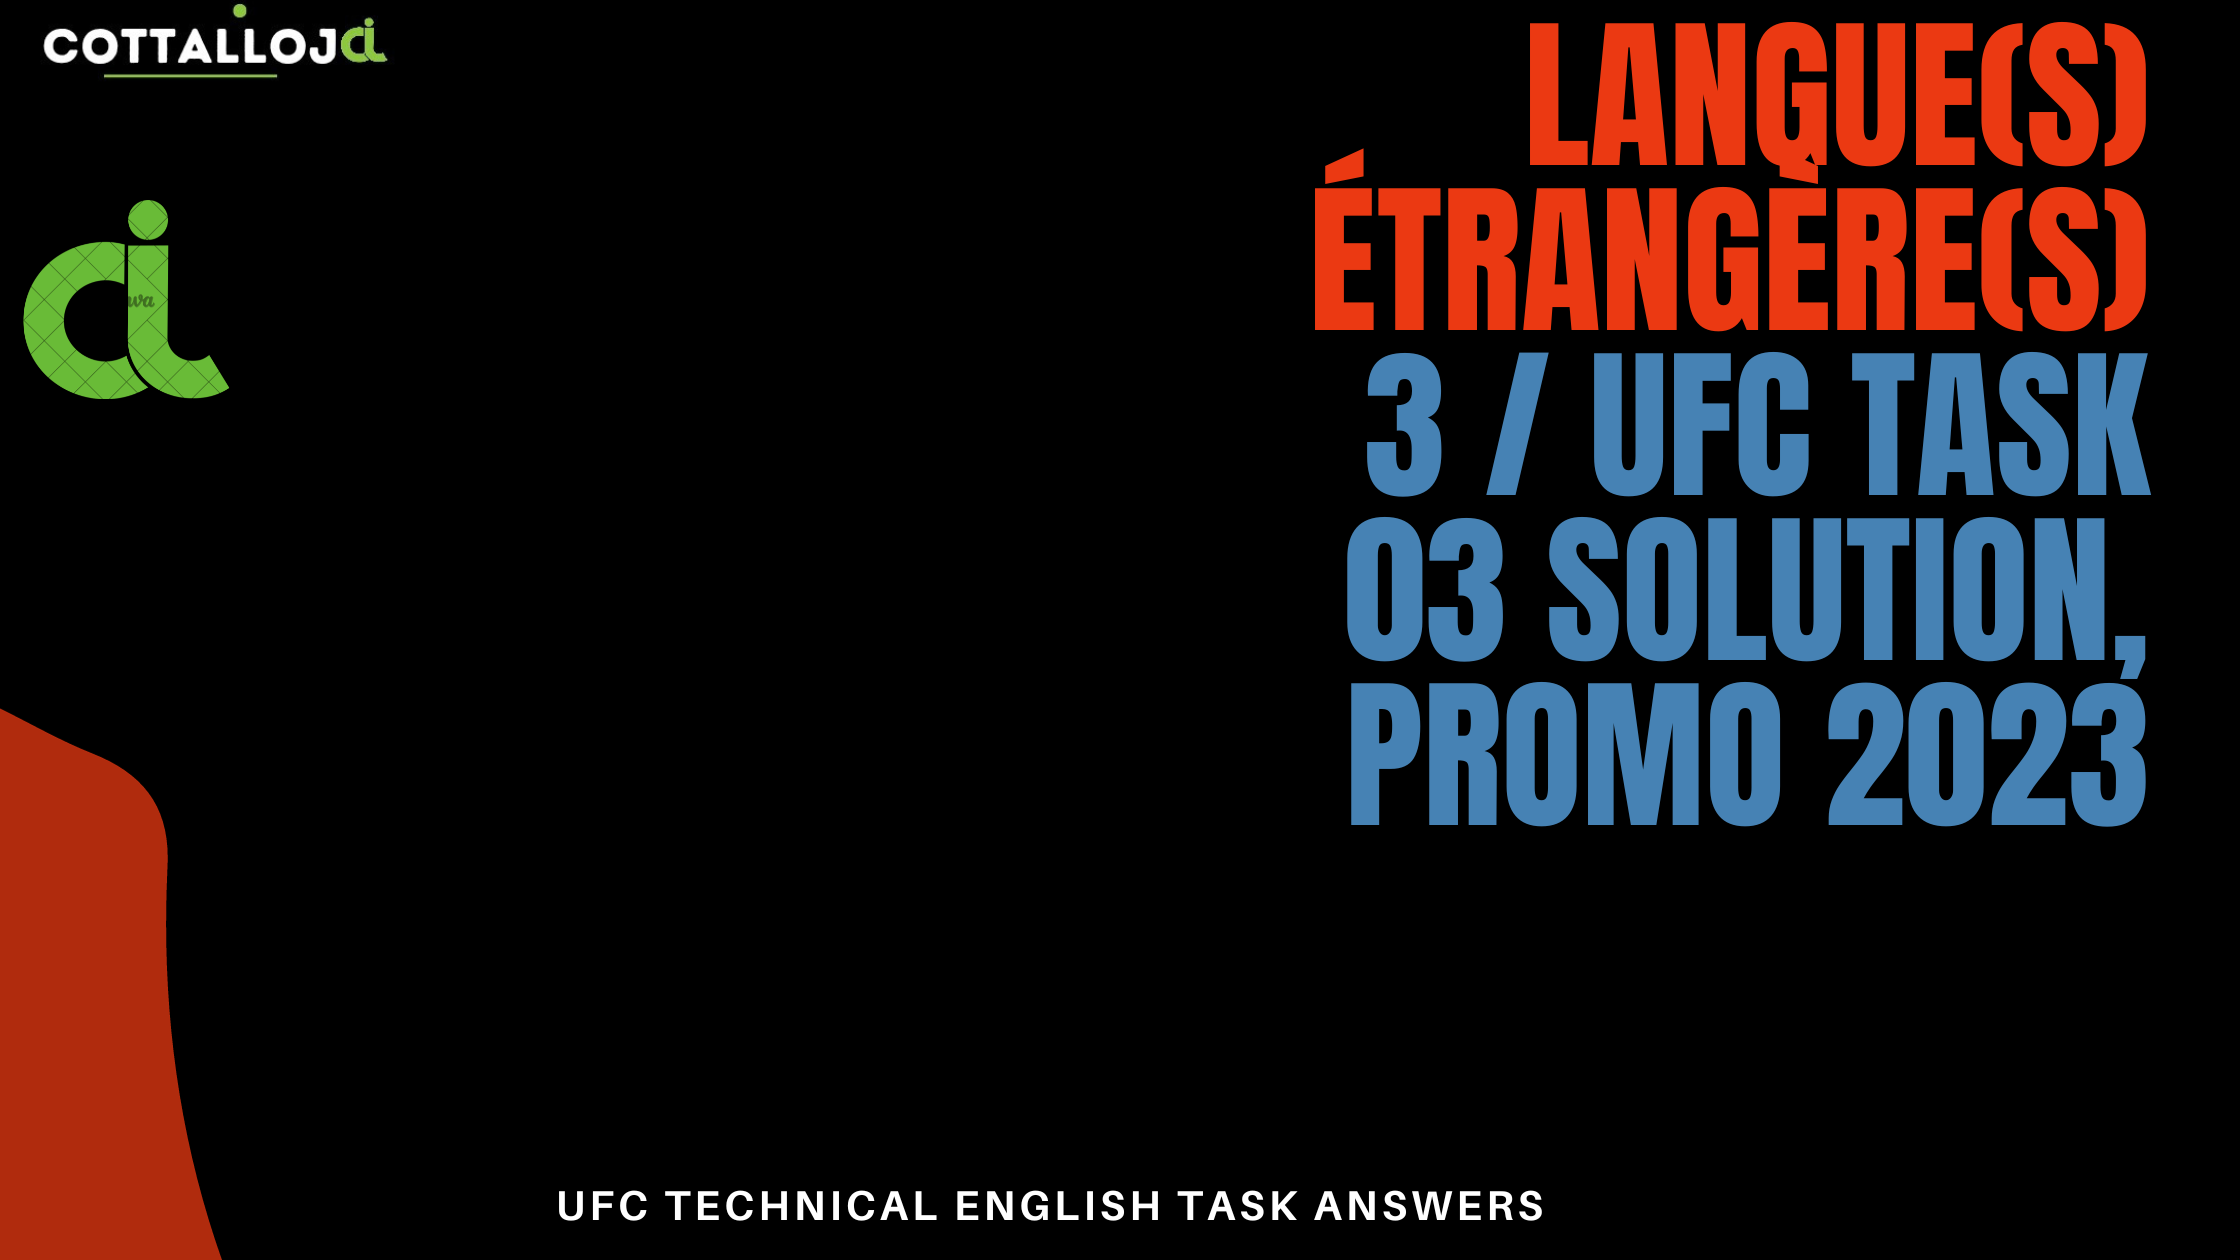 Langue(s) étrangère(s) 3 / UFC Task 03 solution, promo 2023